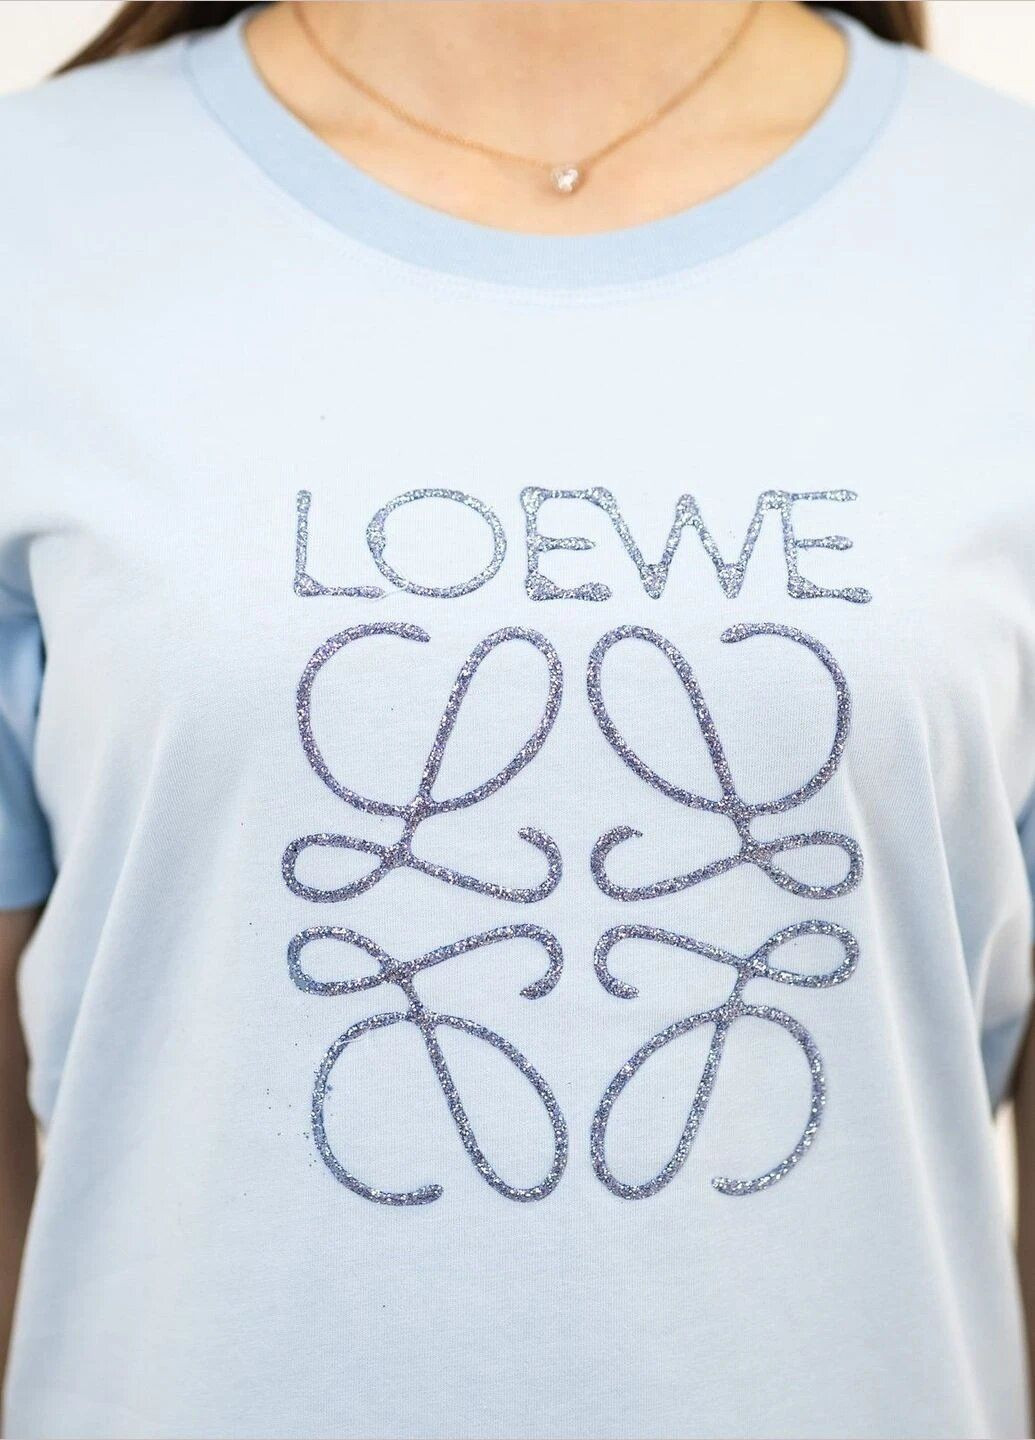 Светло-голубая летняя футболка женская летняя с рисунком с коротким рукавом Loewe TISORT